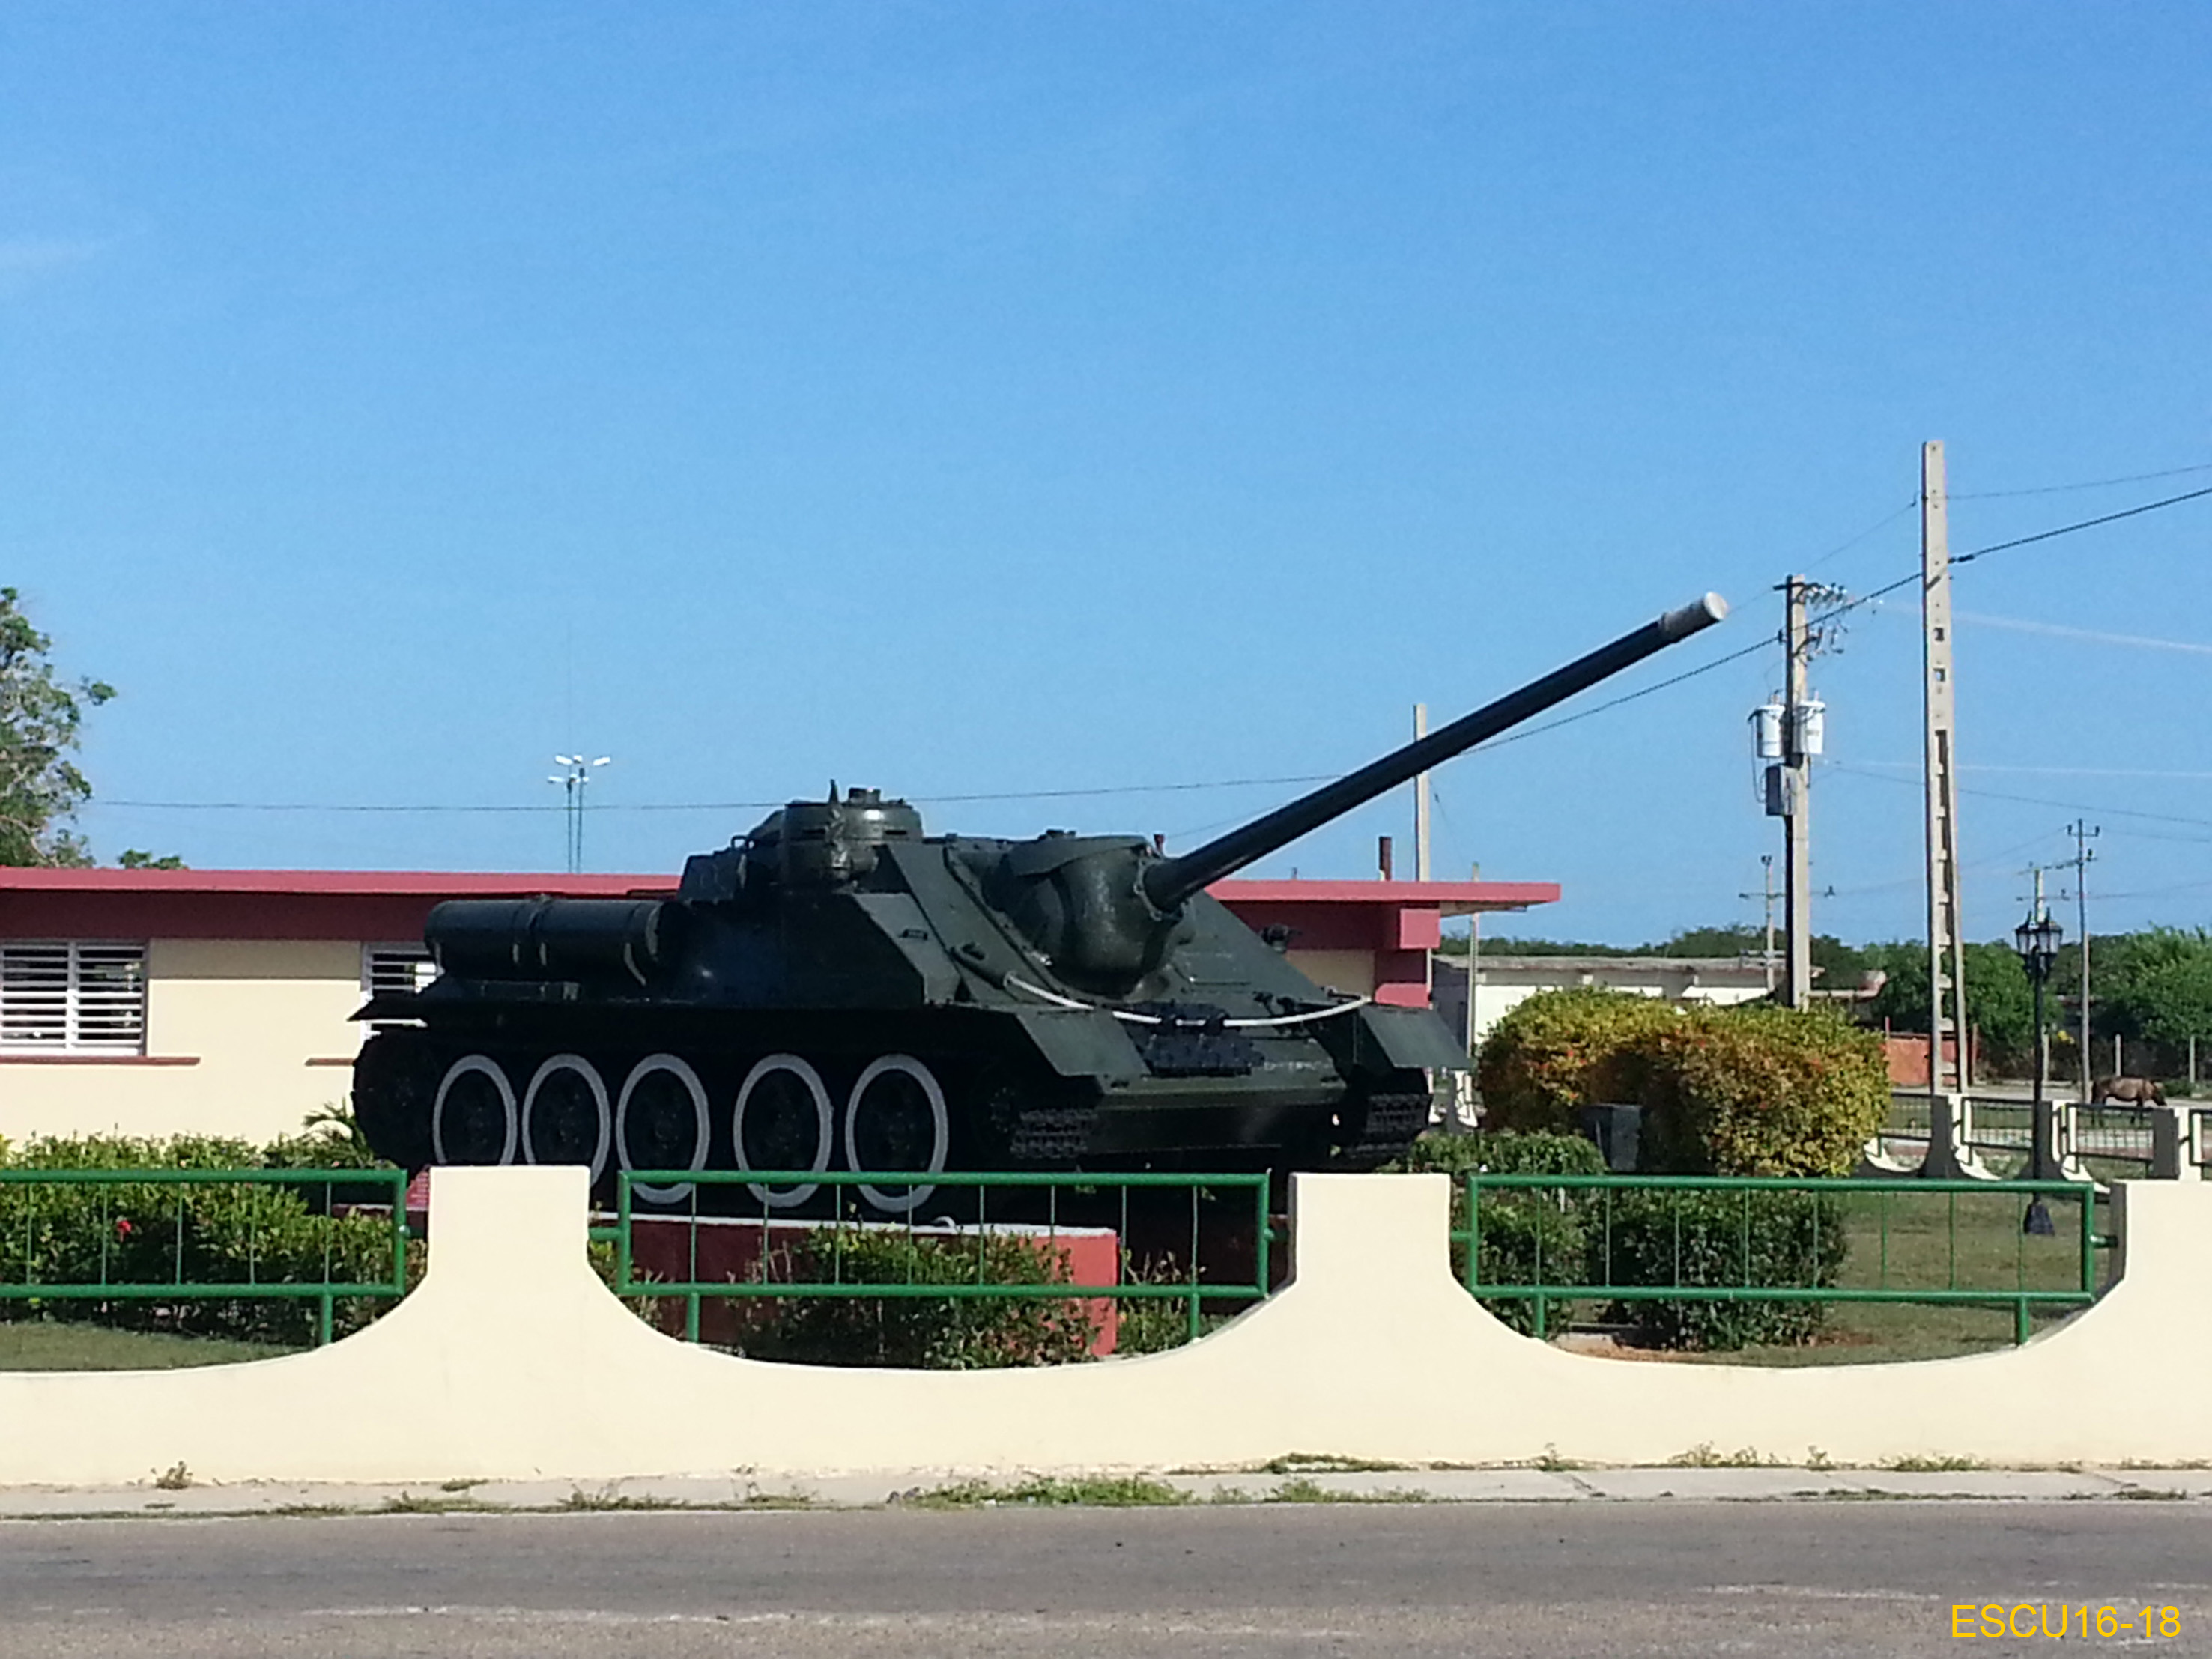 16 - Playa Girn. Di fronte al Museo Memoriale della Battaglia.